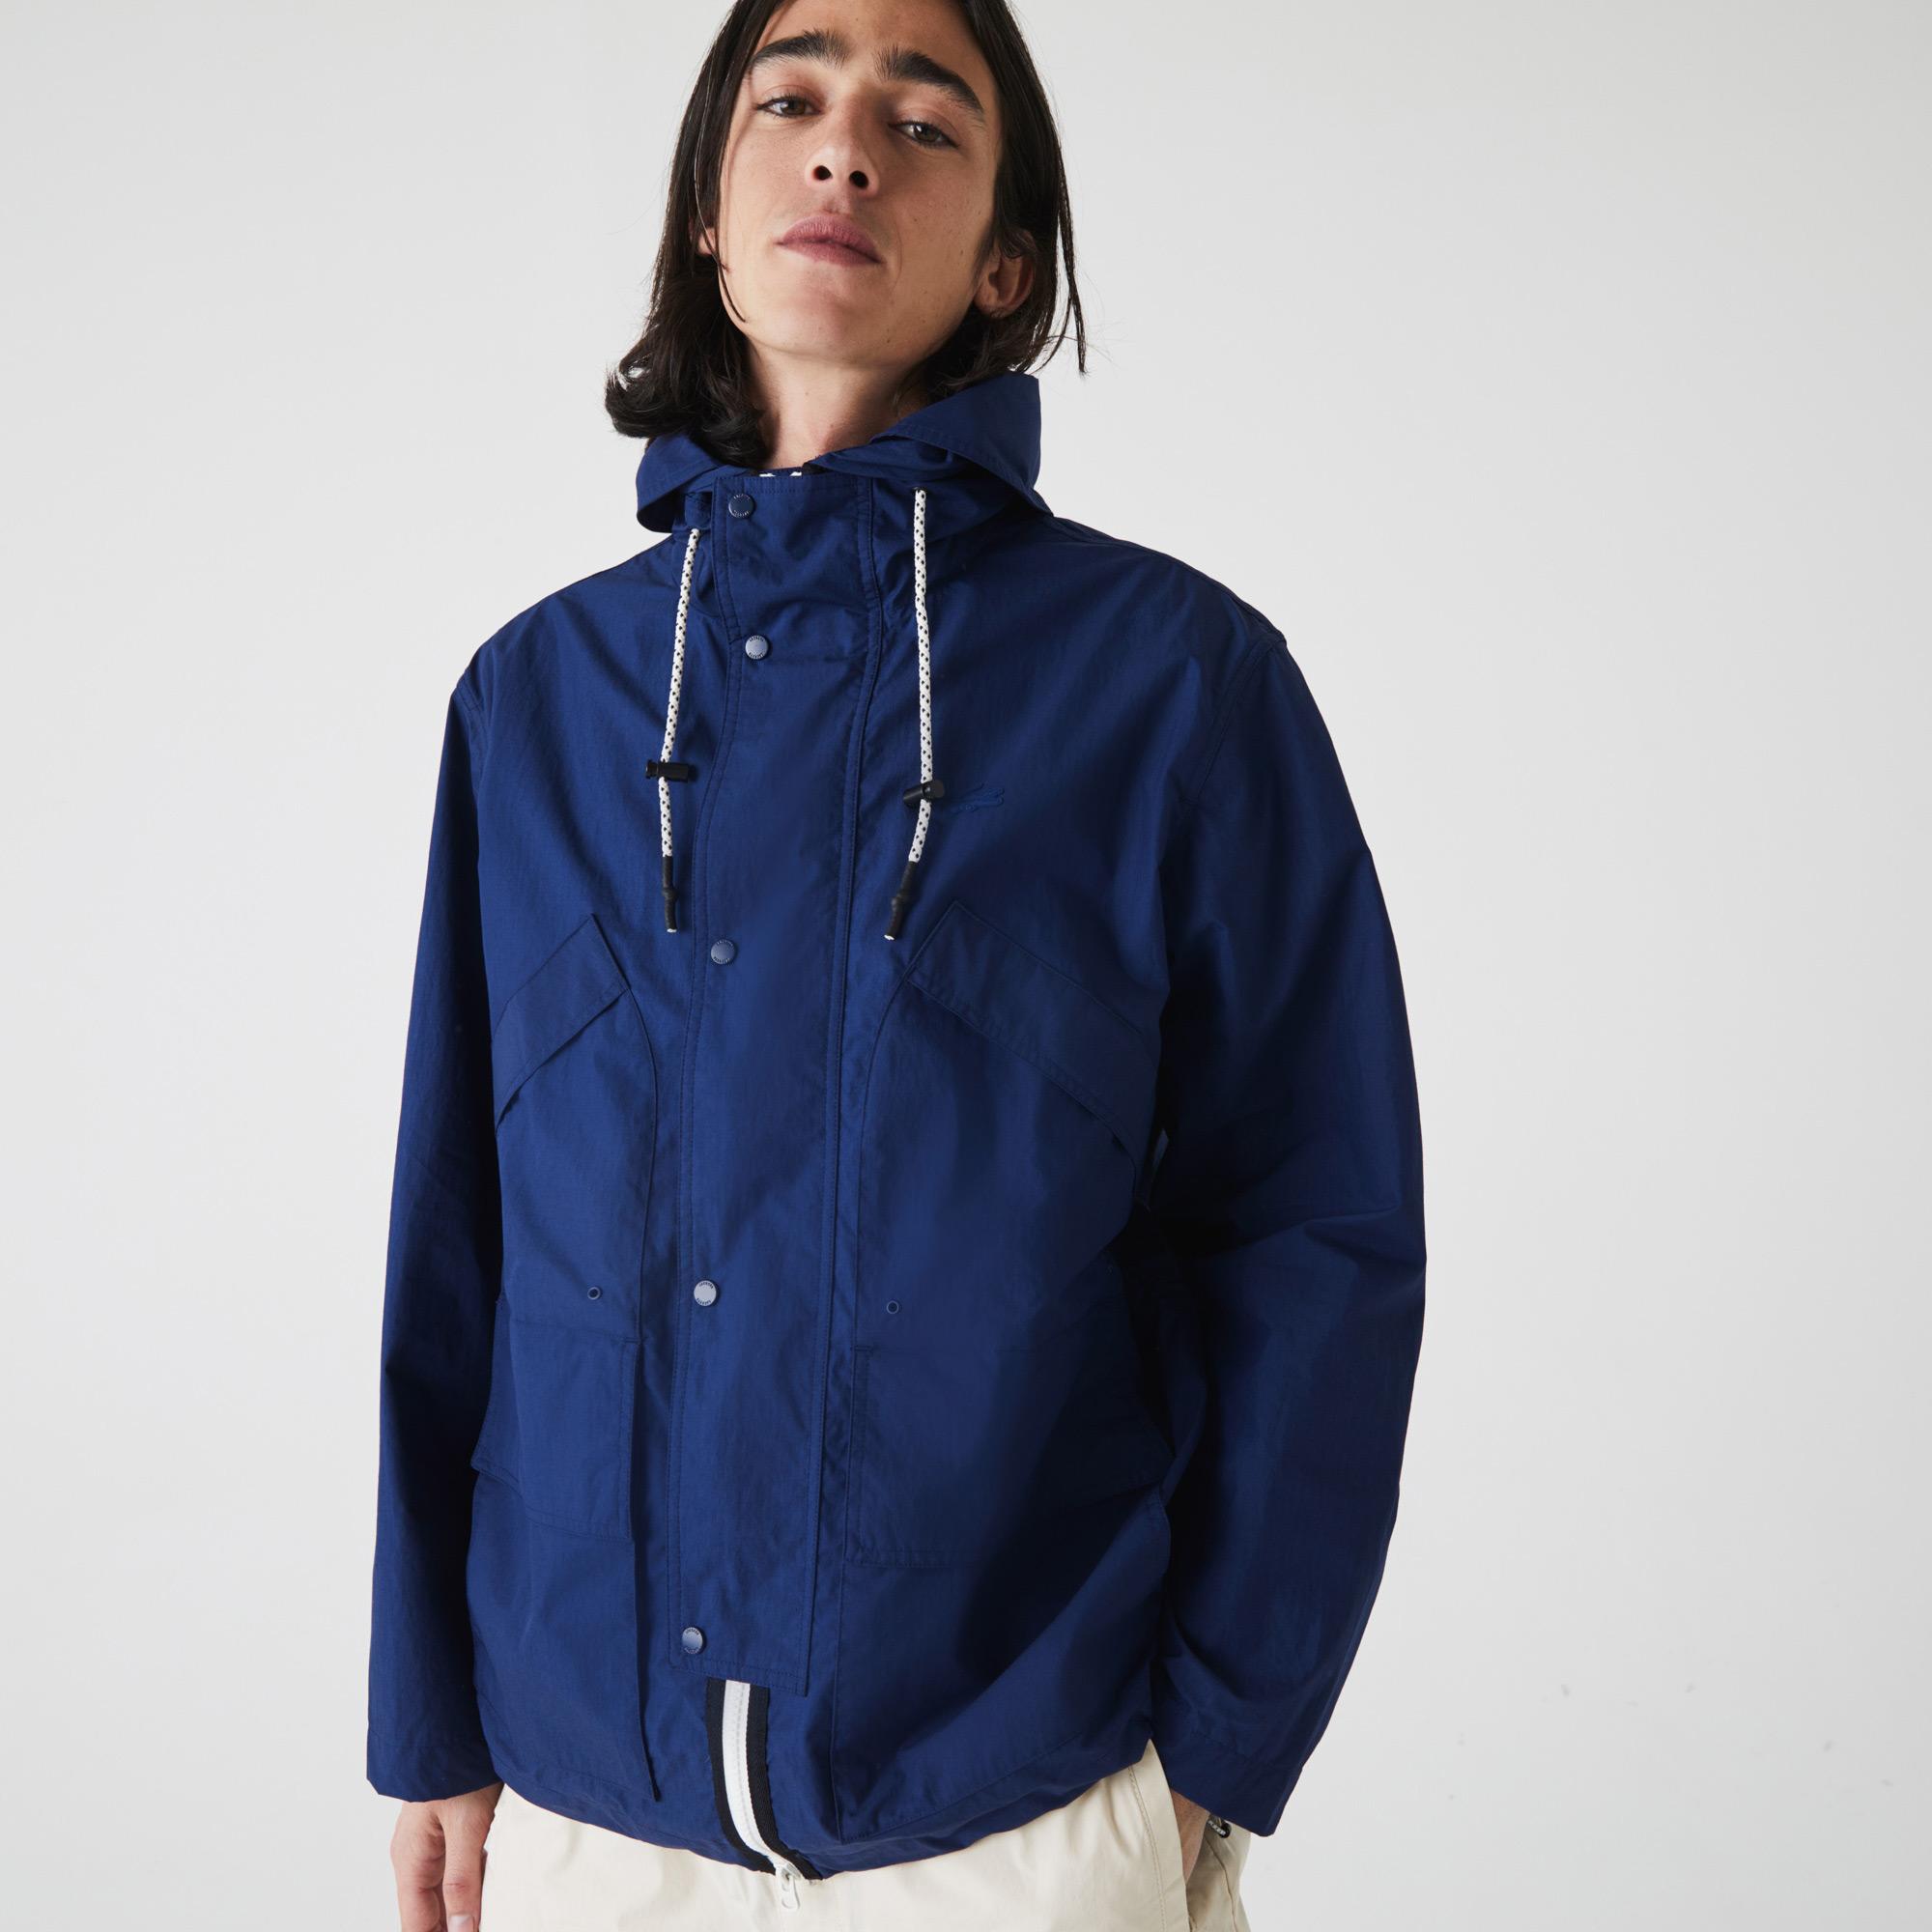 Lacoste Men’s Ultra-Light Pockets Zip Summer Jacket